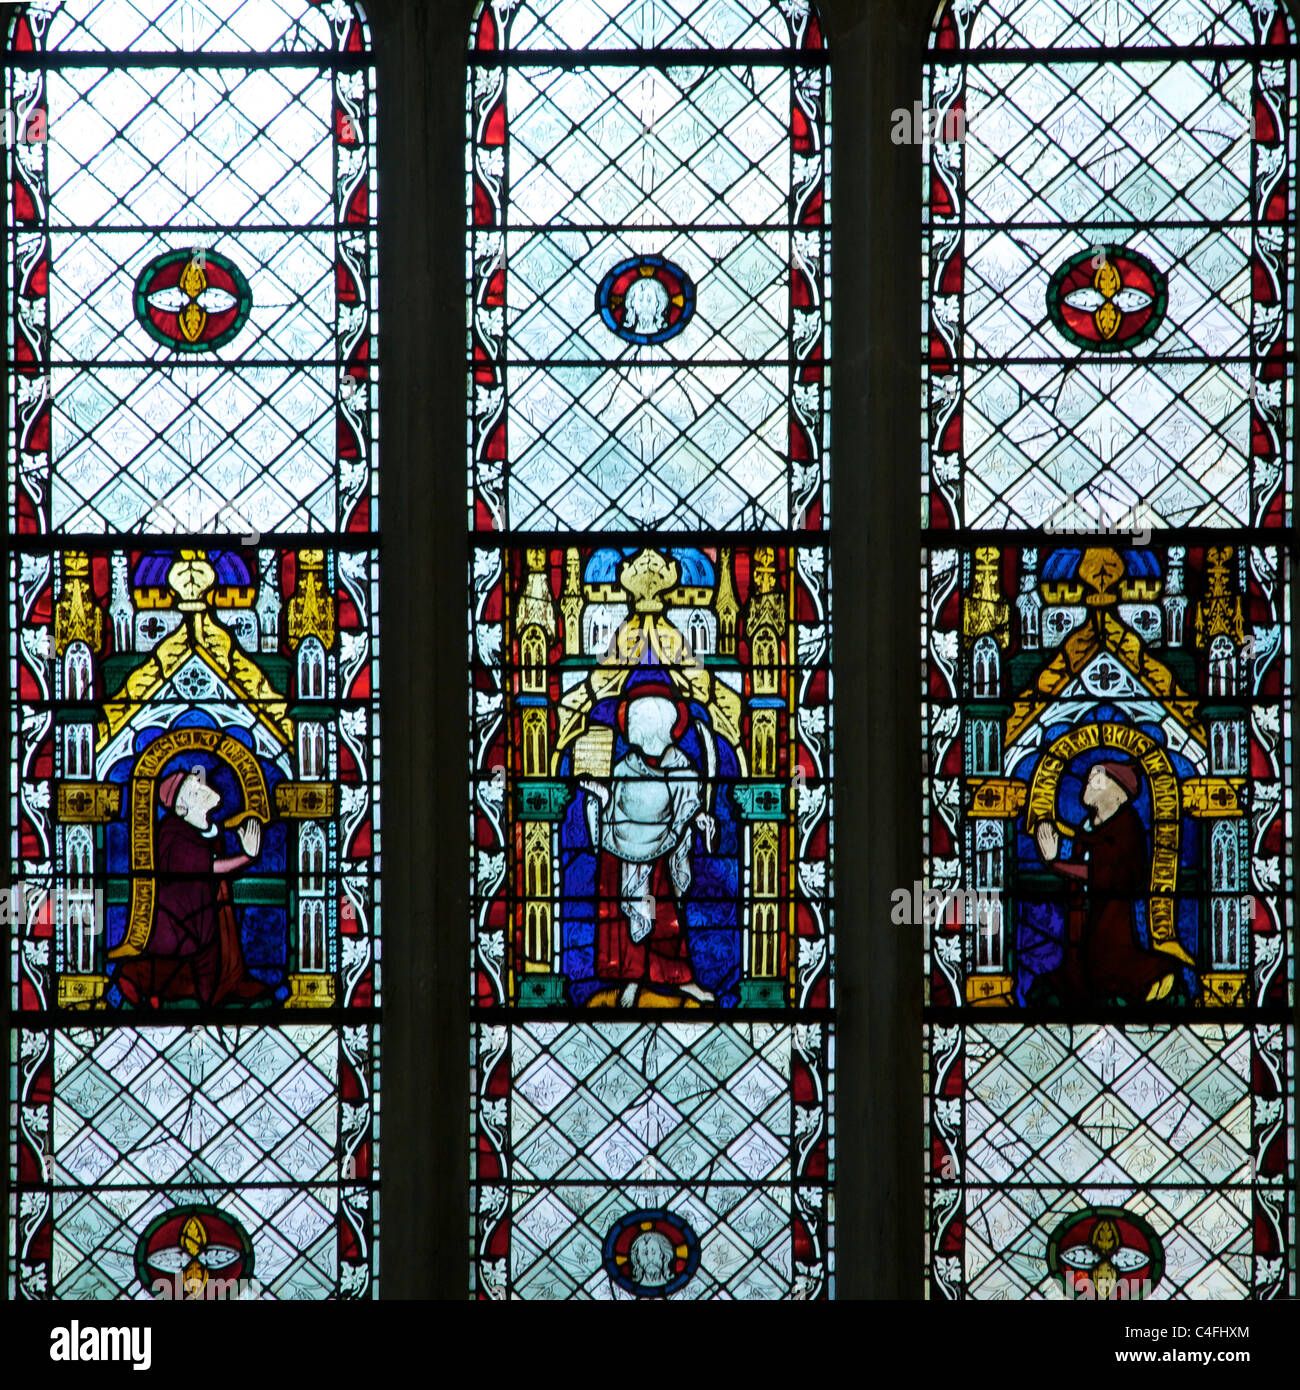 Finestre in vetro colorato del XIII e XIV secolo, Santi con patroni inginocchiati, Merton College Chapel, Oxford University, Oxford, Regno Unito Foto Stock